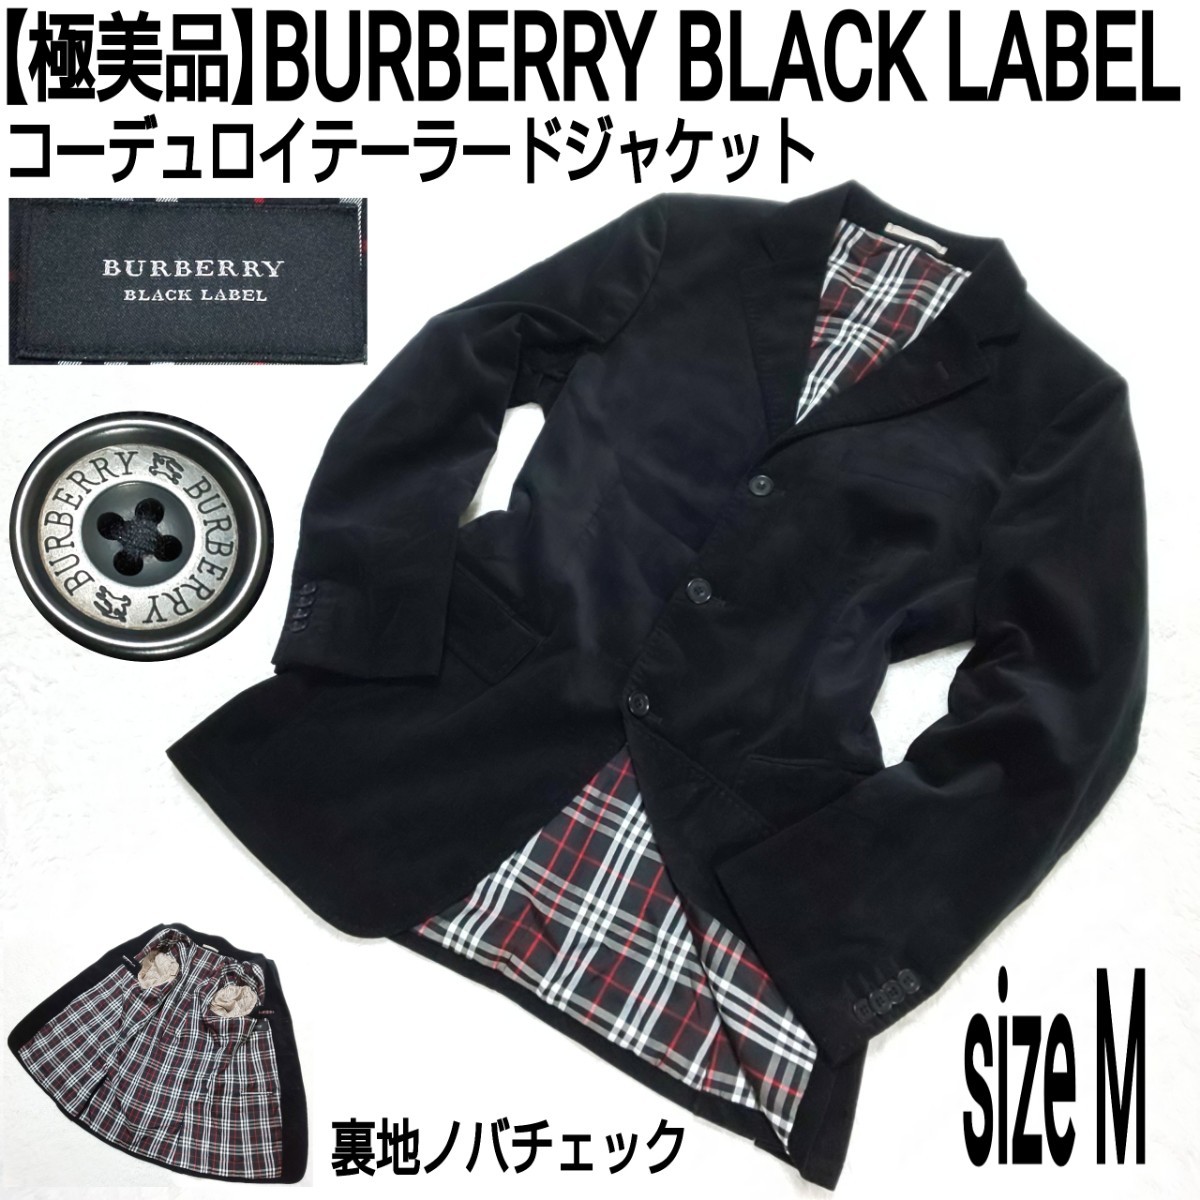 【極美品】BURBERRY BLACK LABEL バーバリーブラックレーベル コーデュロイテーラードジャケット(M) 裏地ノバチェック ブラック 黒 メンズ_画像1